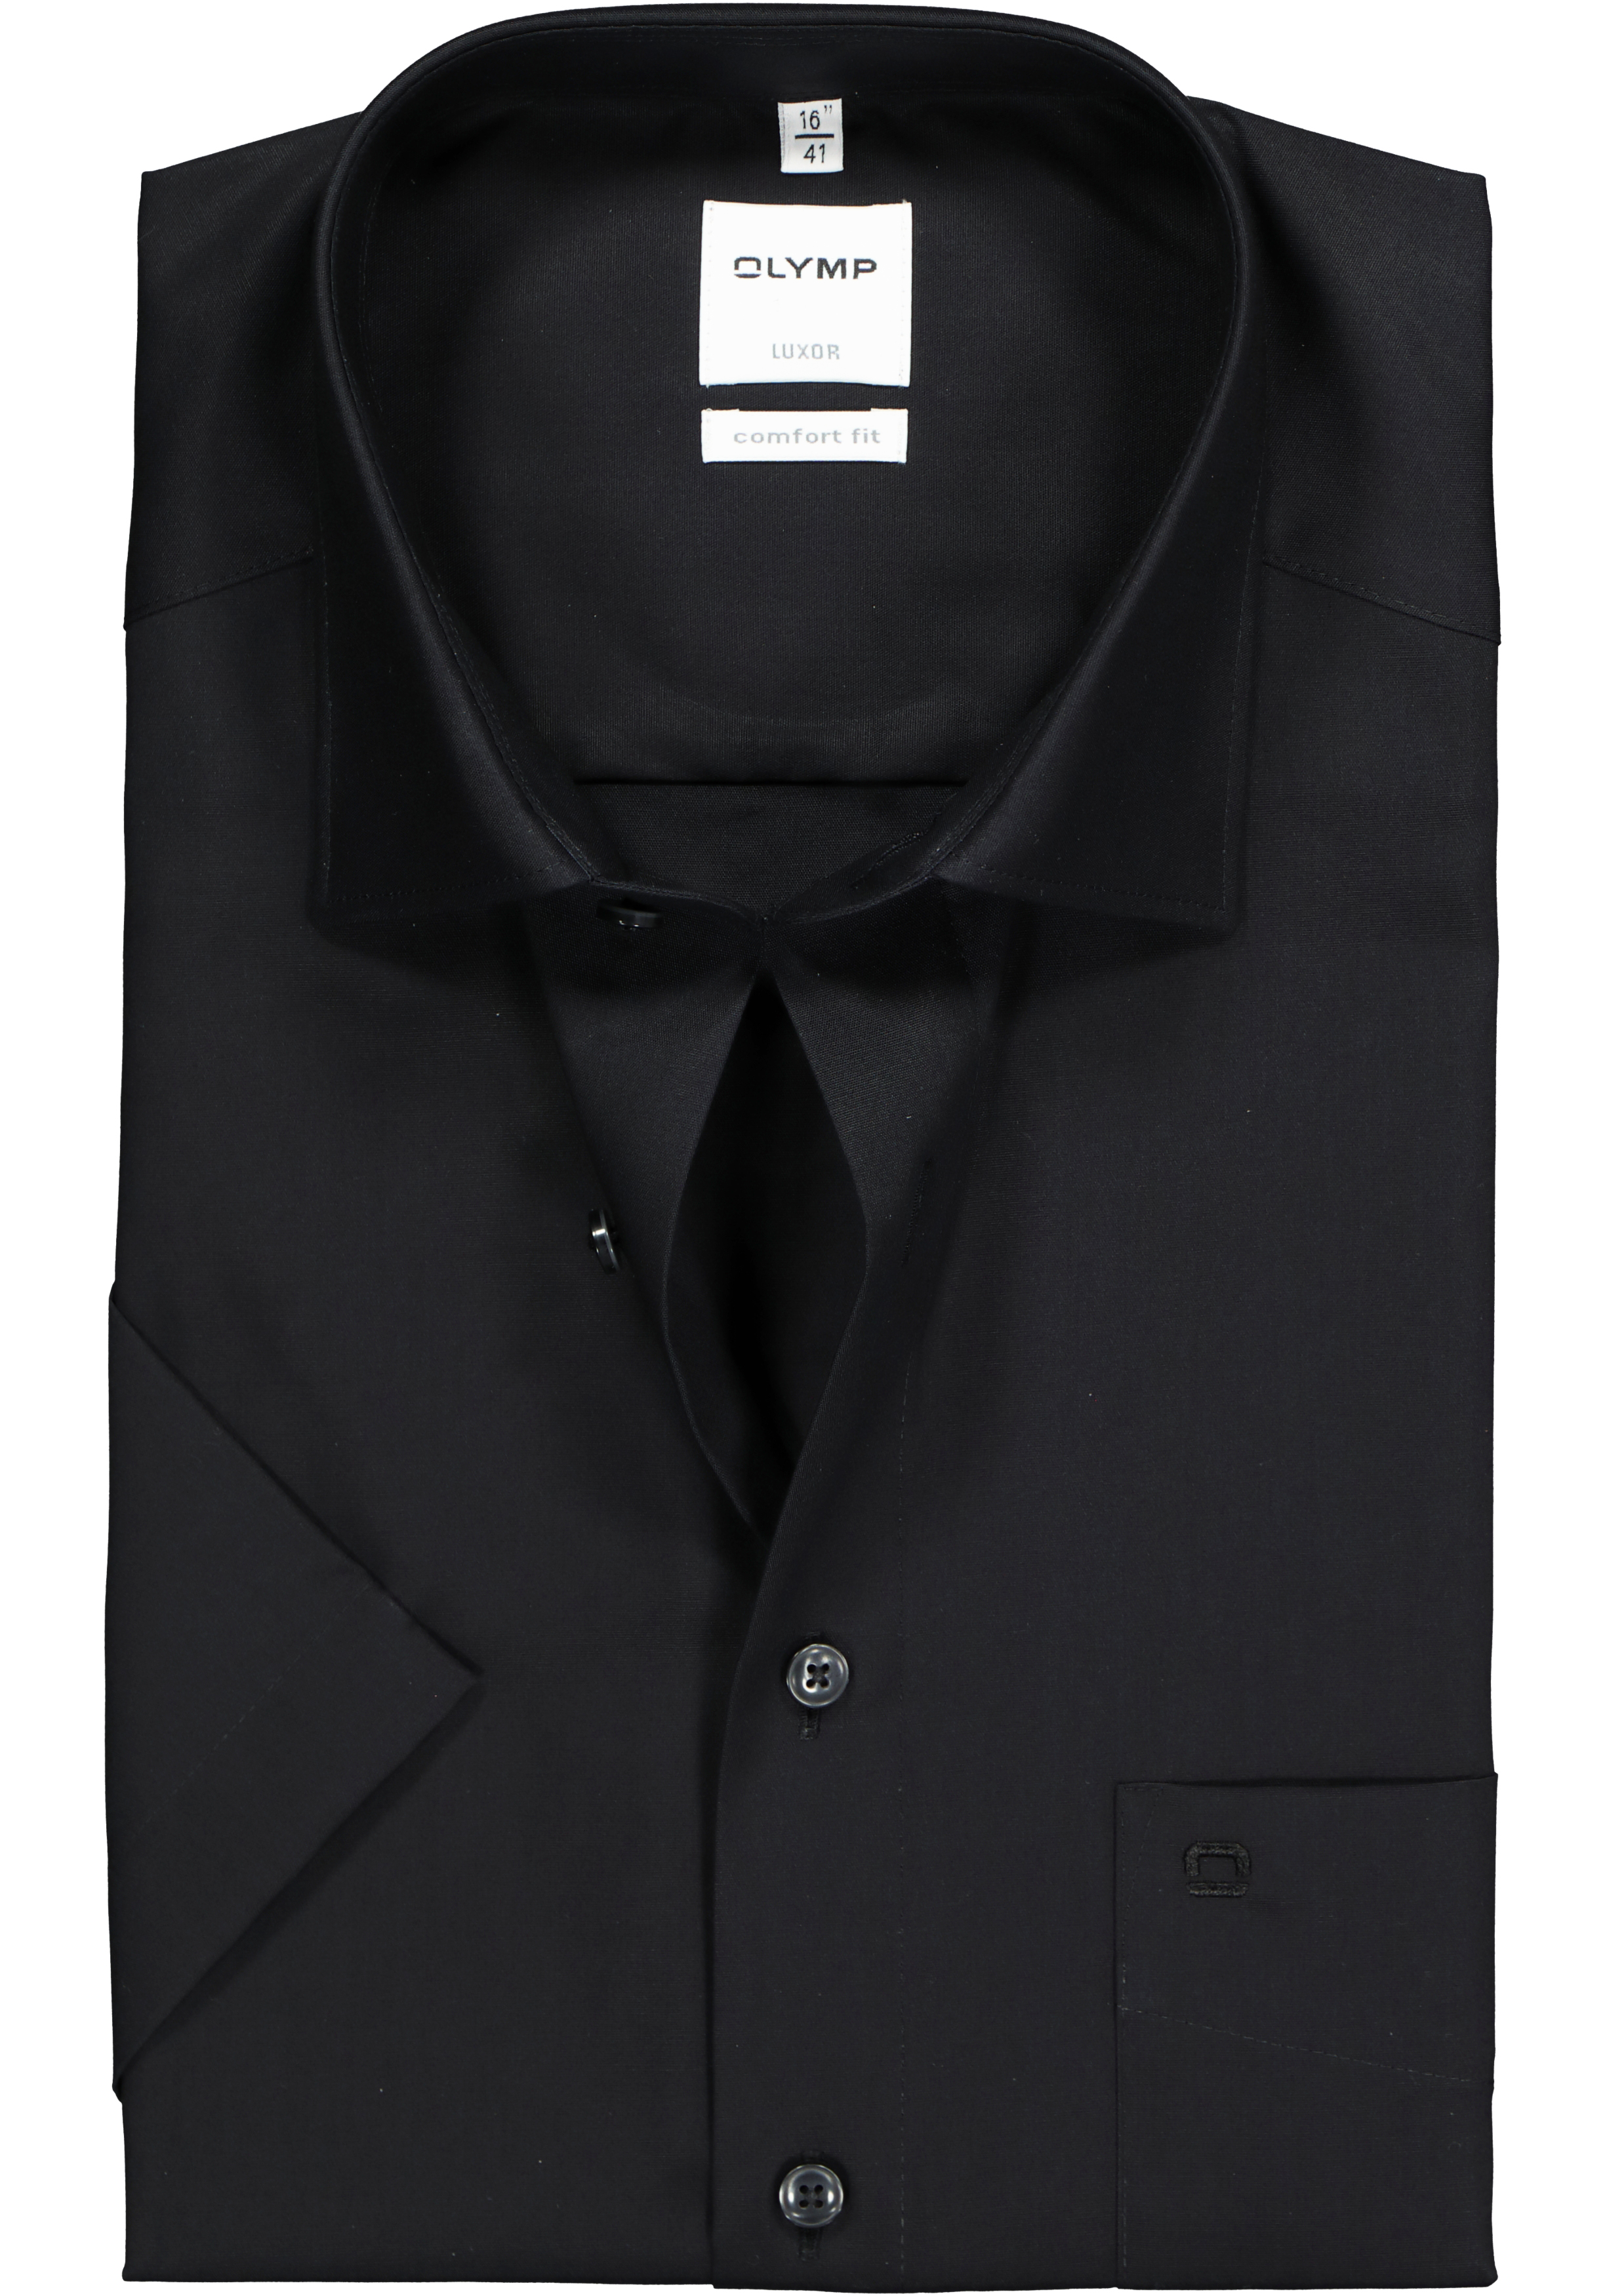 OLYMP Luxor comfort fit overhemd, korte mouwen, zwart